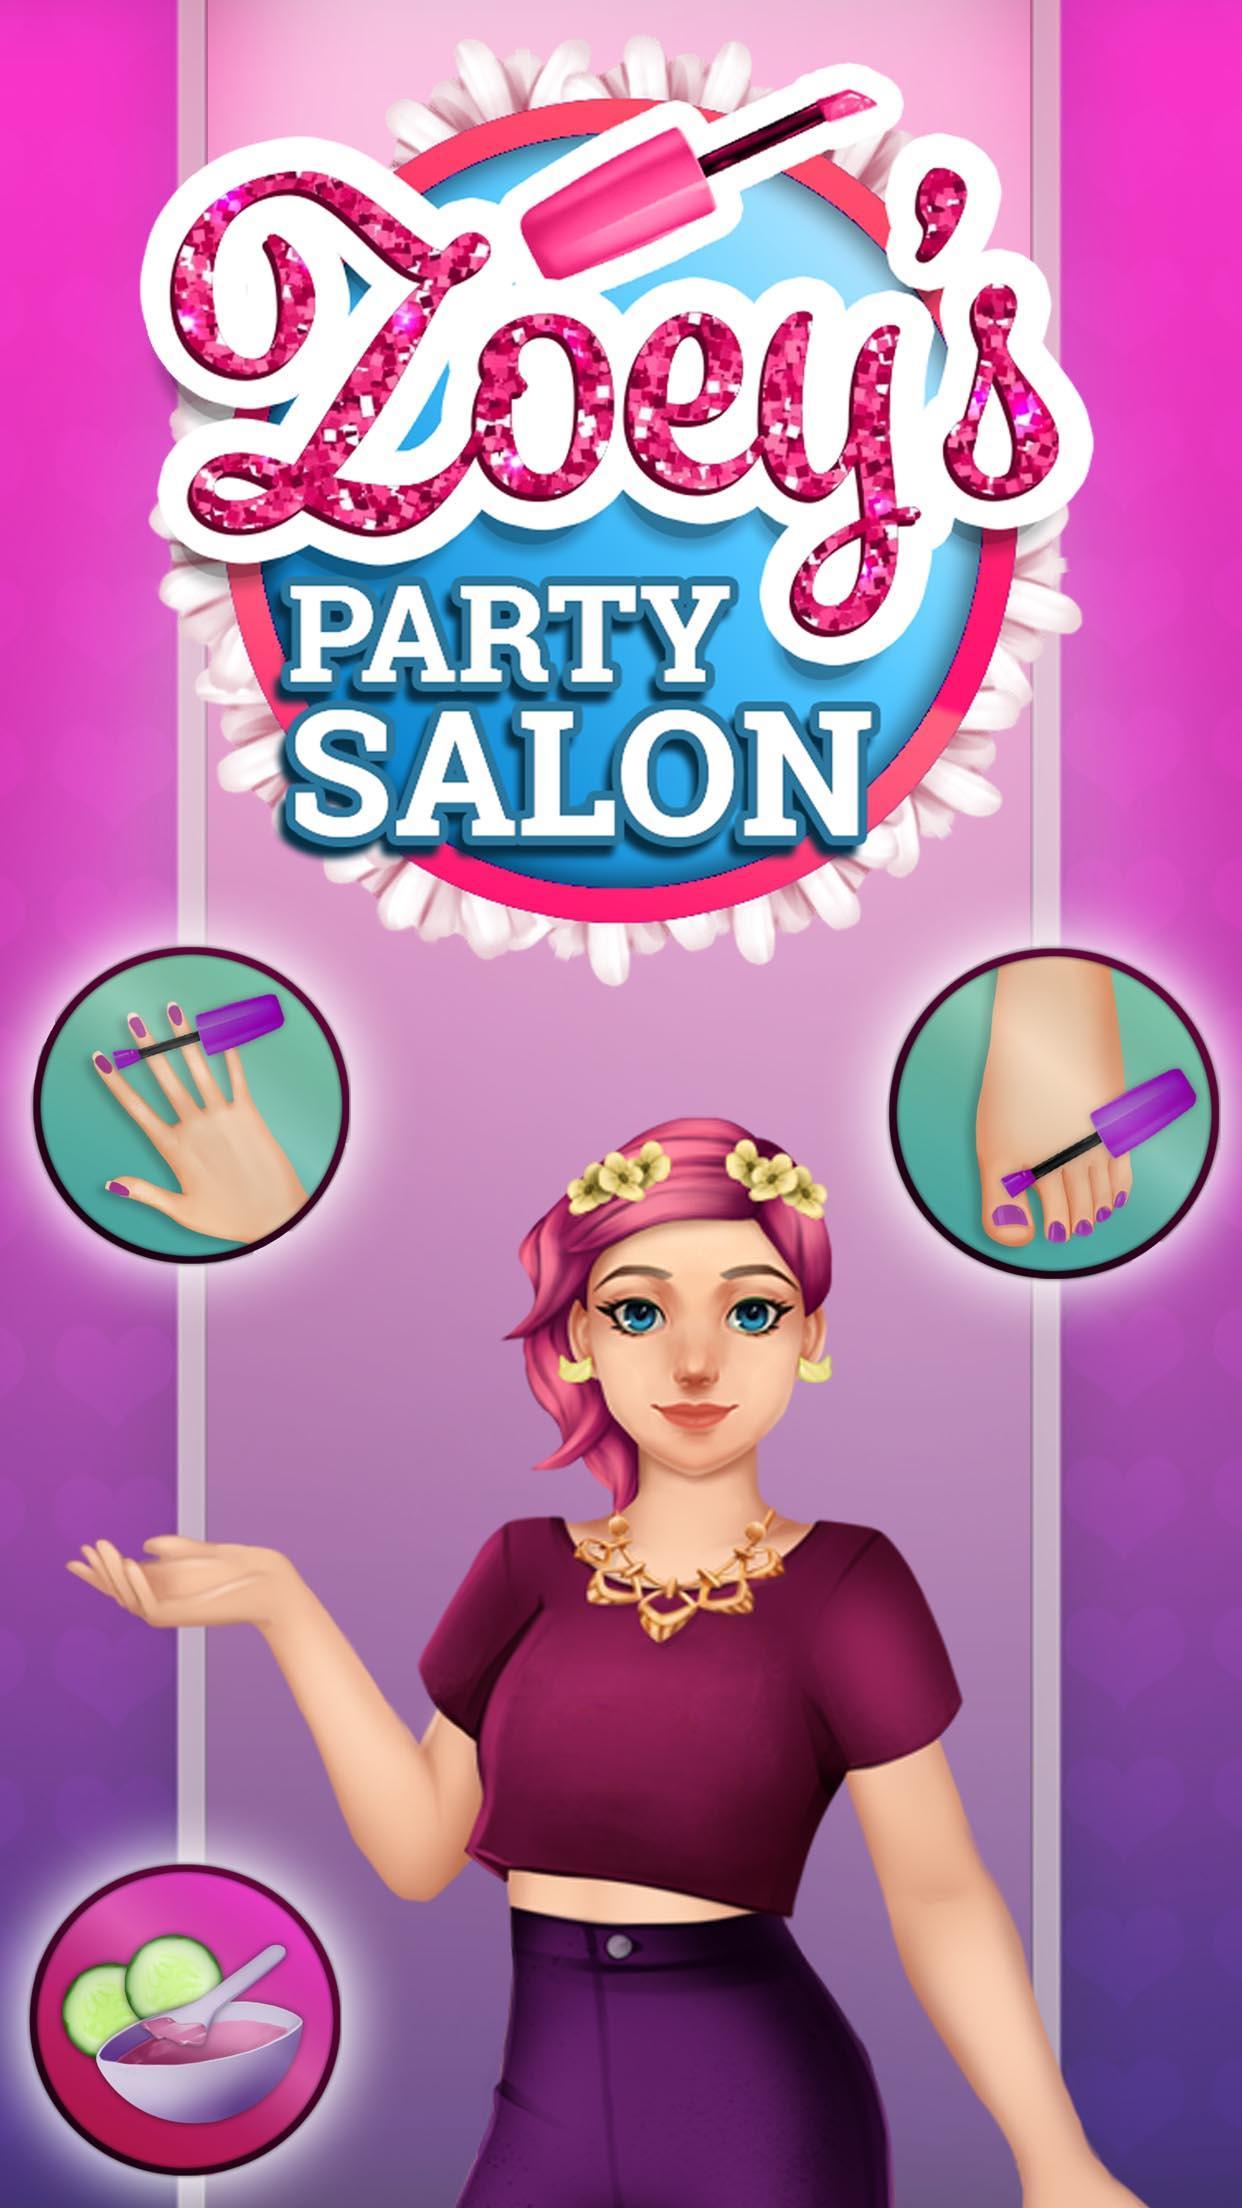 Screenshot 1 of Zoey's Party Salon - ทำเล็บ แต่งหน้า สปา และแต่งตัว 1.0.23